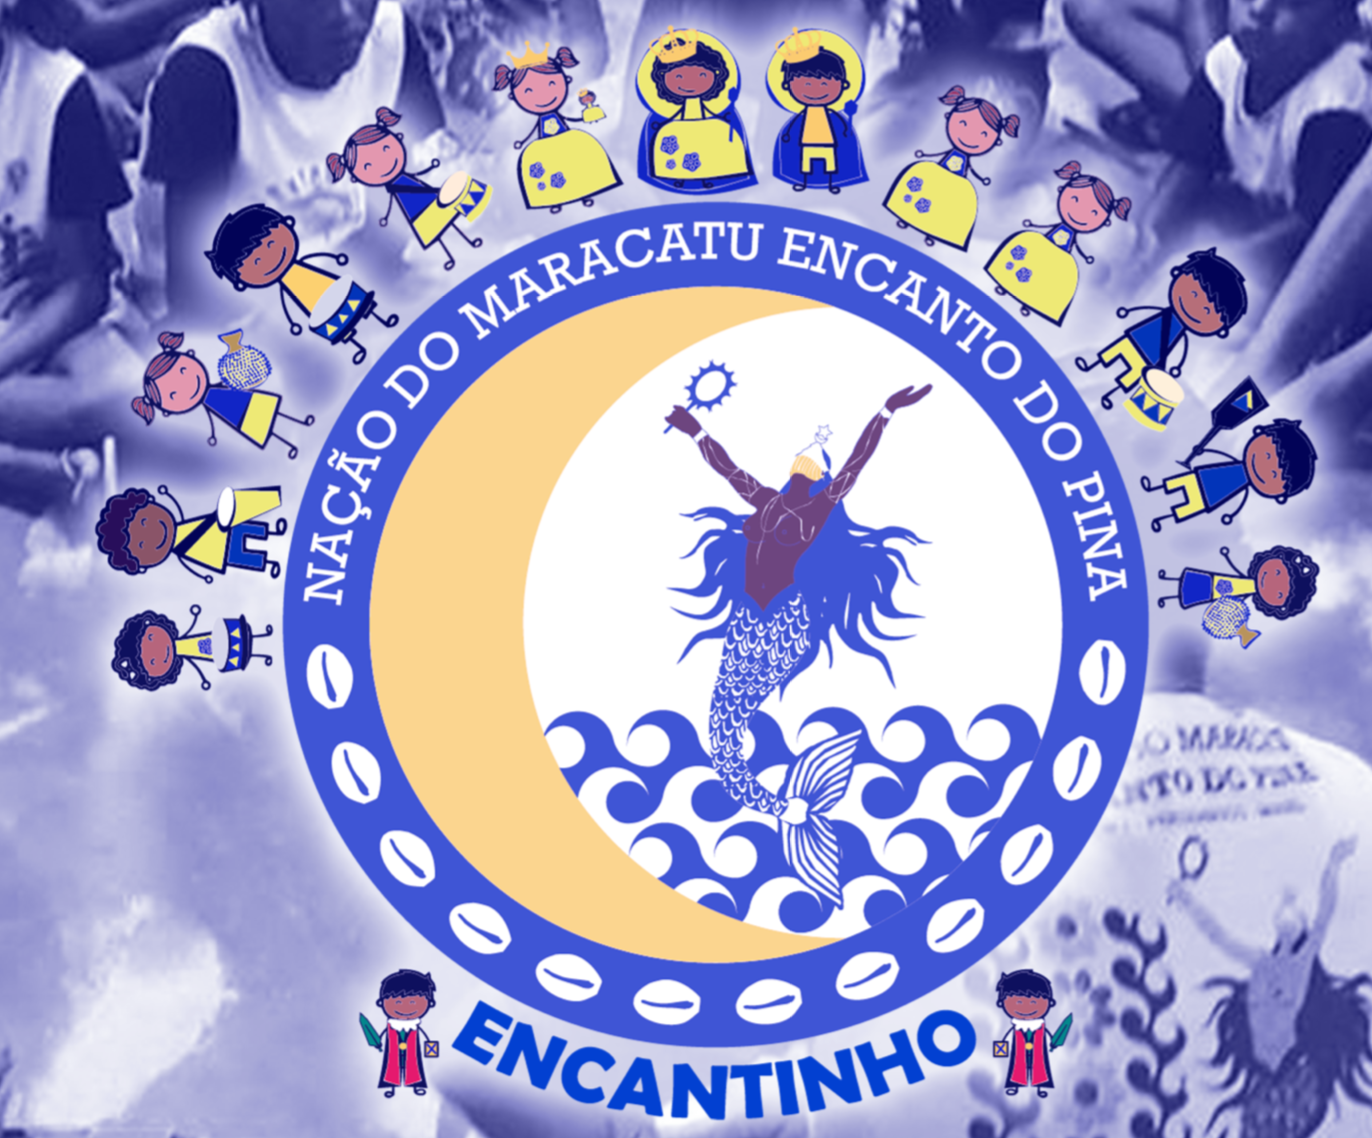 ENCANTO DO PINA – Site oficial da Nação do Maracatu ENCANTO DO PINA